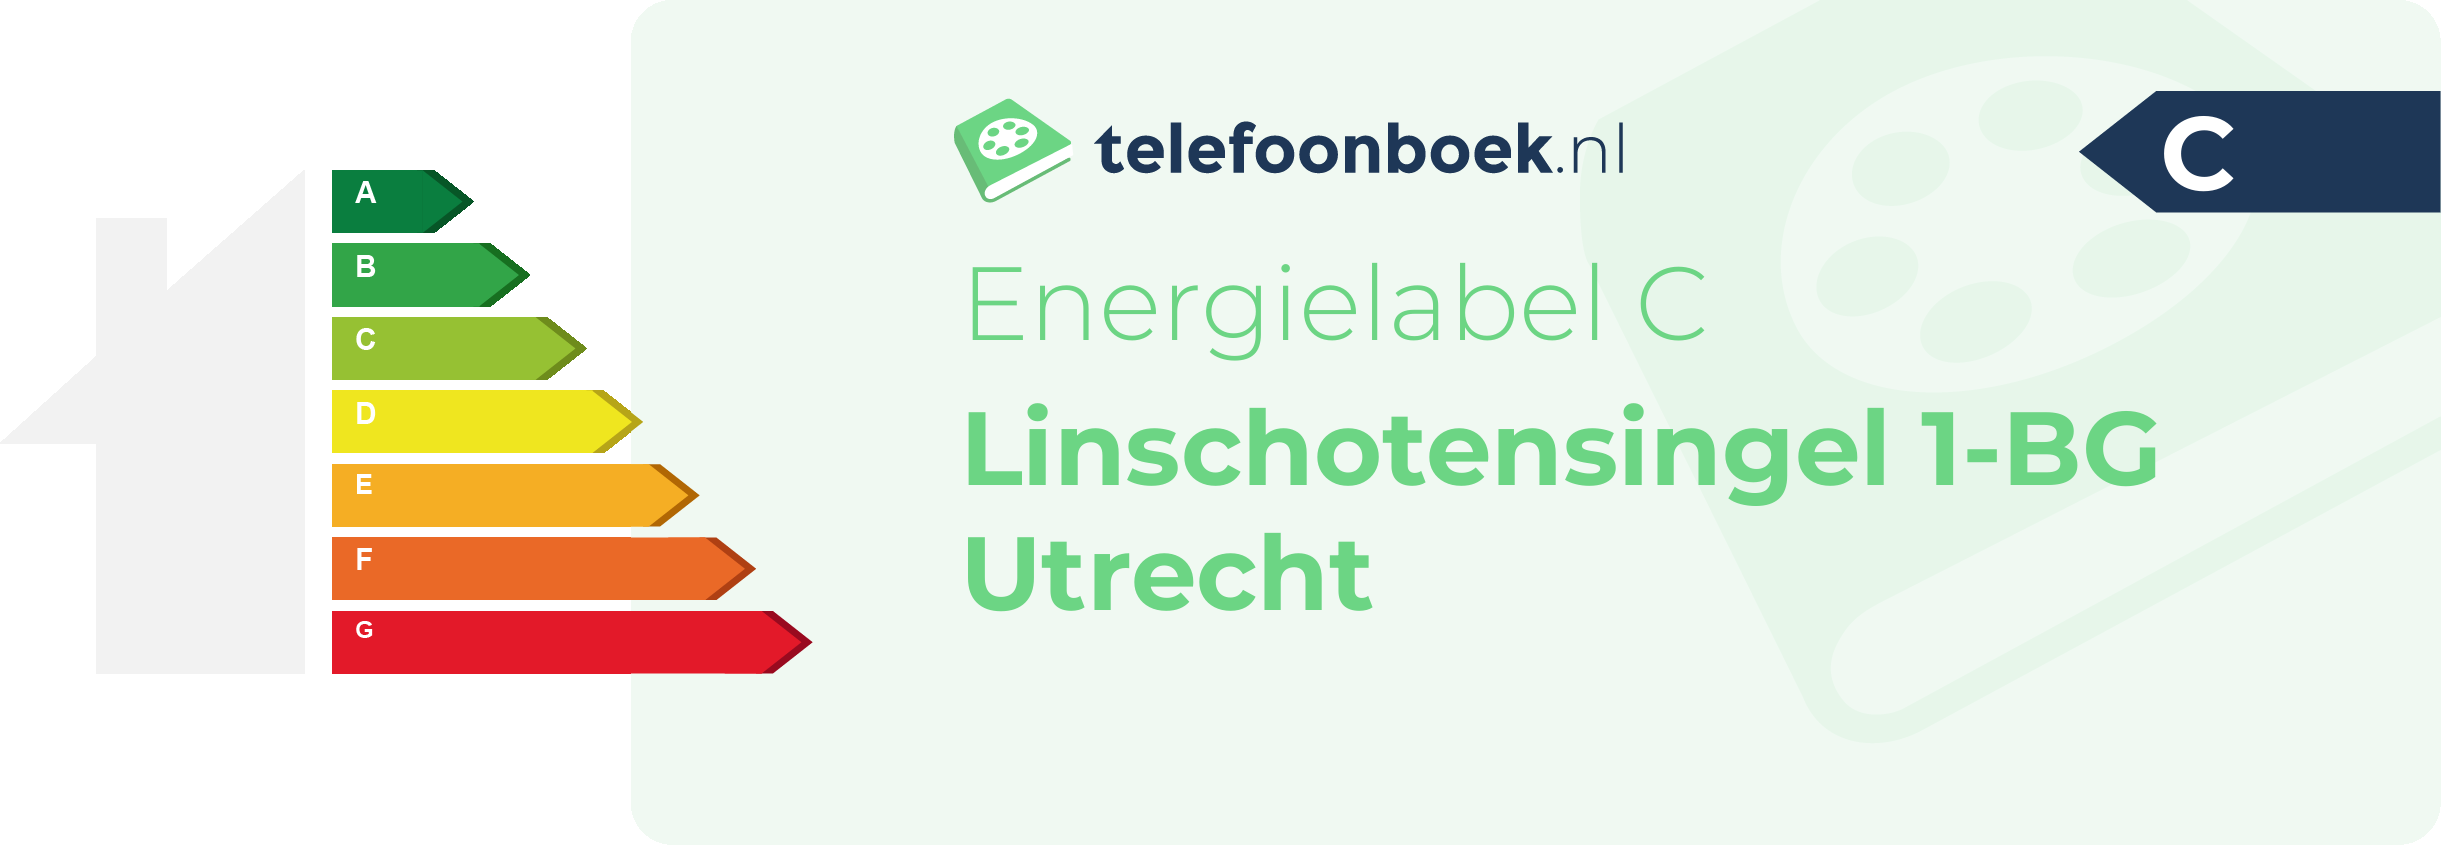 Energielabel Linschotensingel 1-BG Utrecht